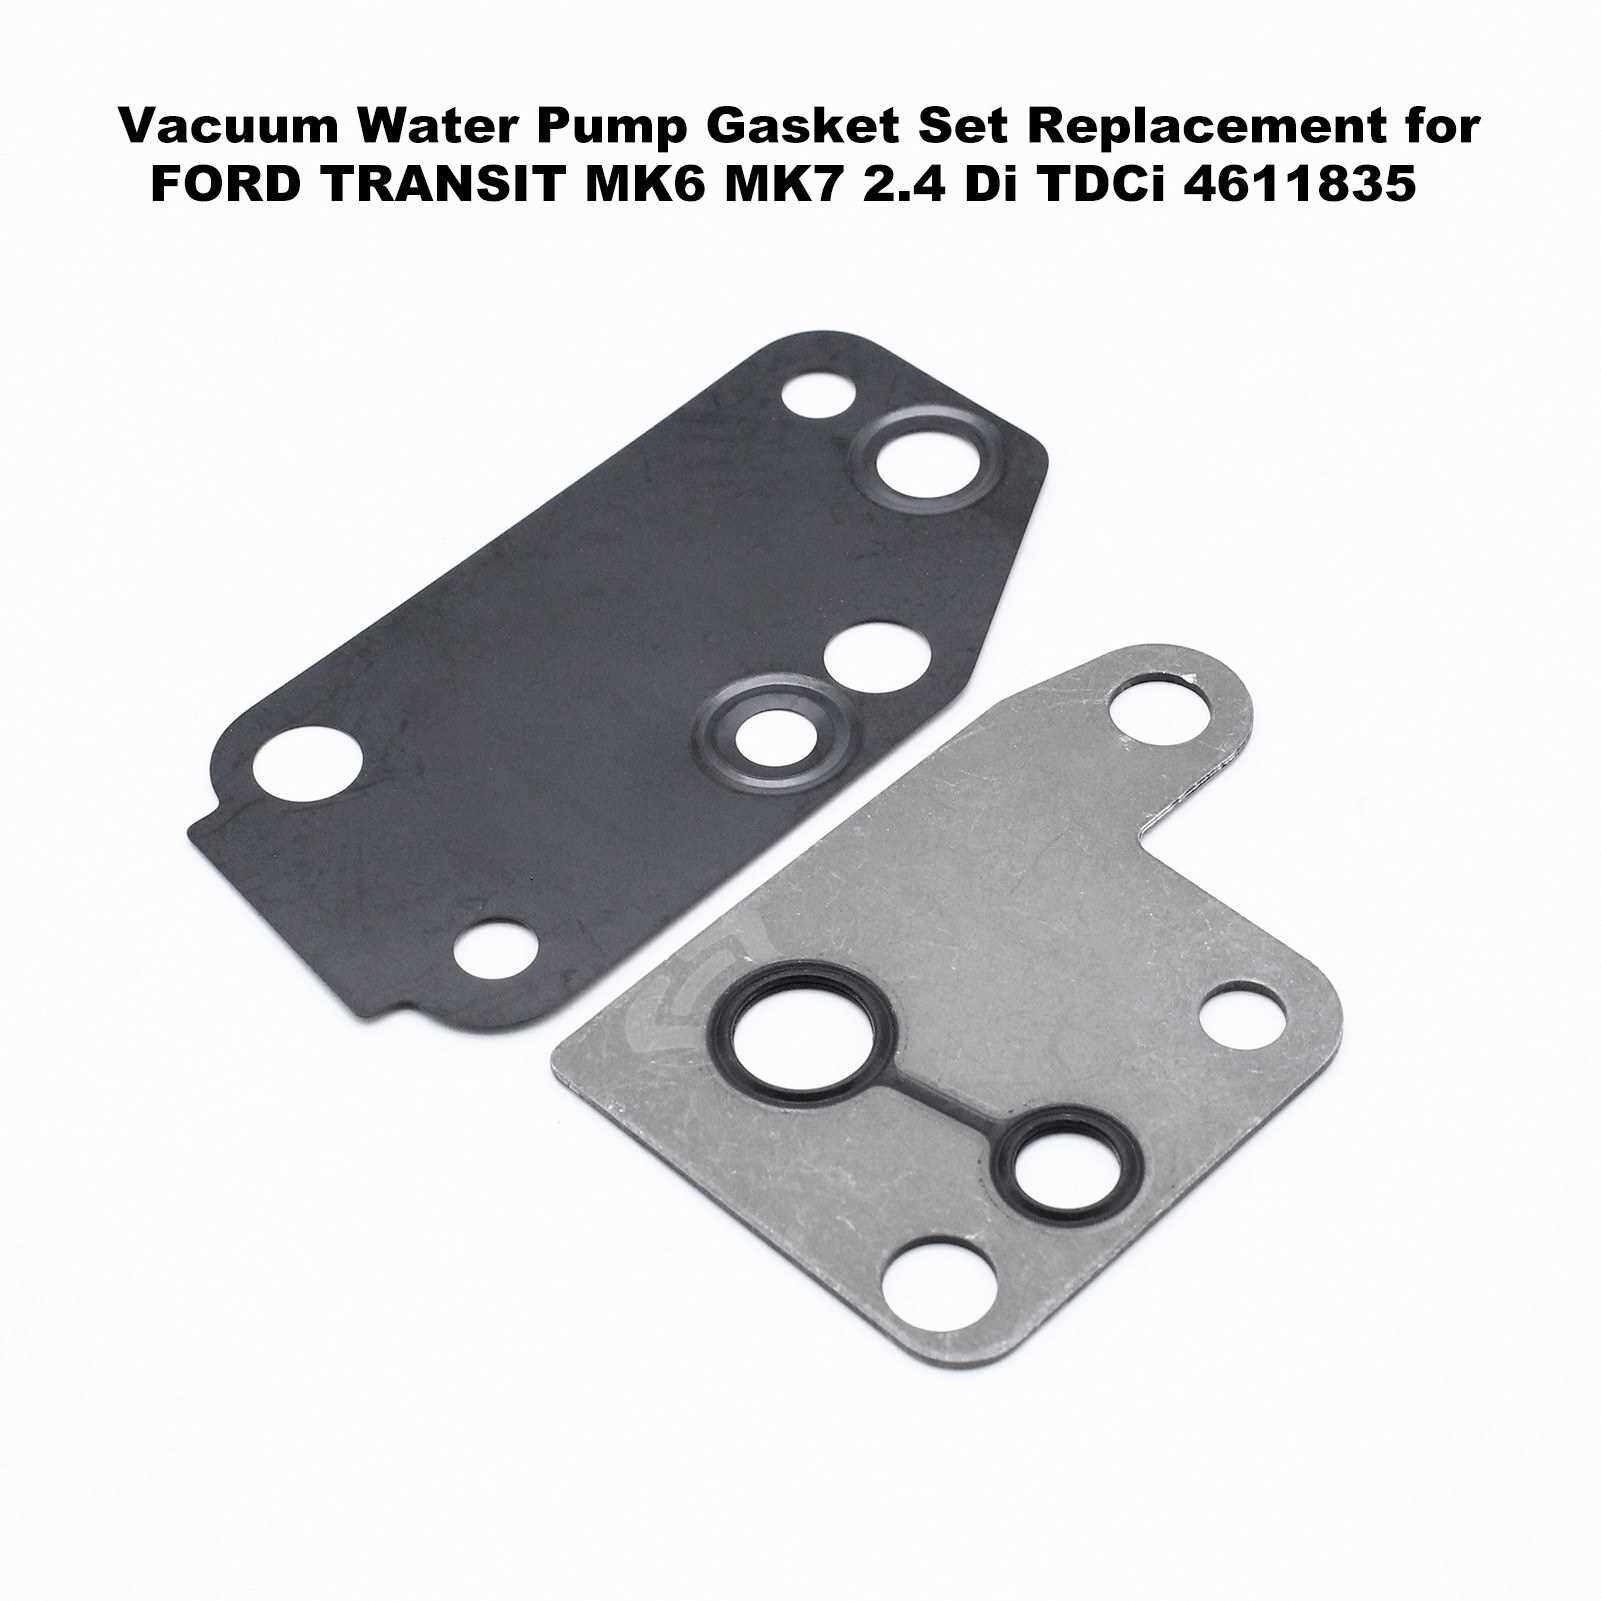 Vacuum Water Pump Gasket Set Replacement for FORD TRANSIT MK6 MK7 2.4 Di TDCi 4611835 (Standard)